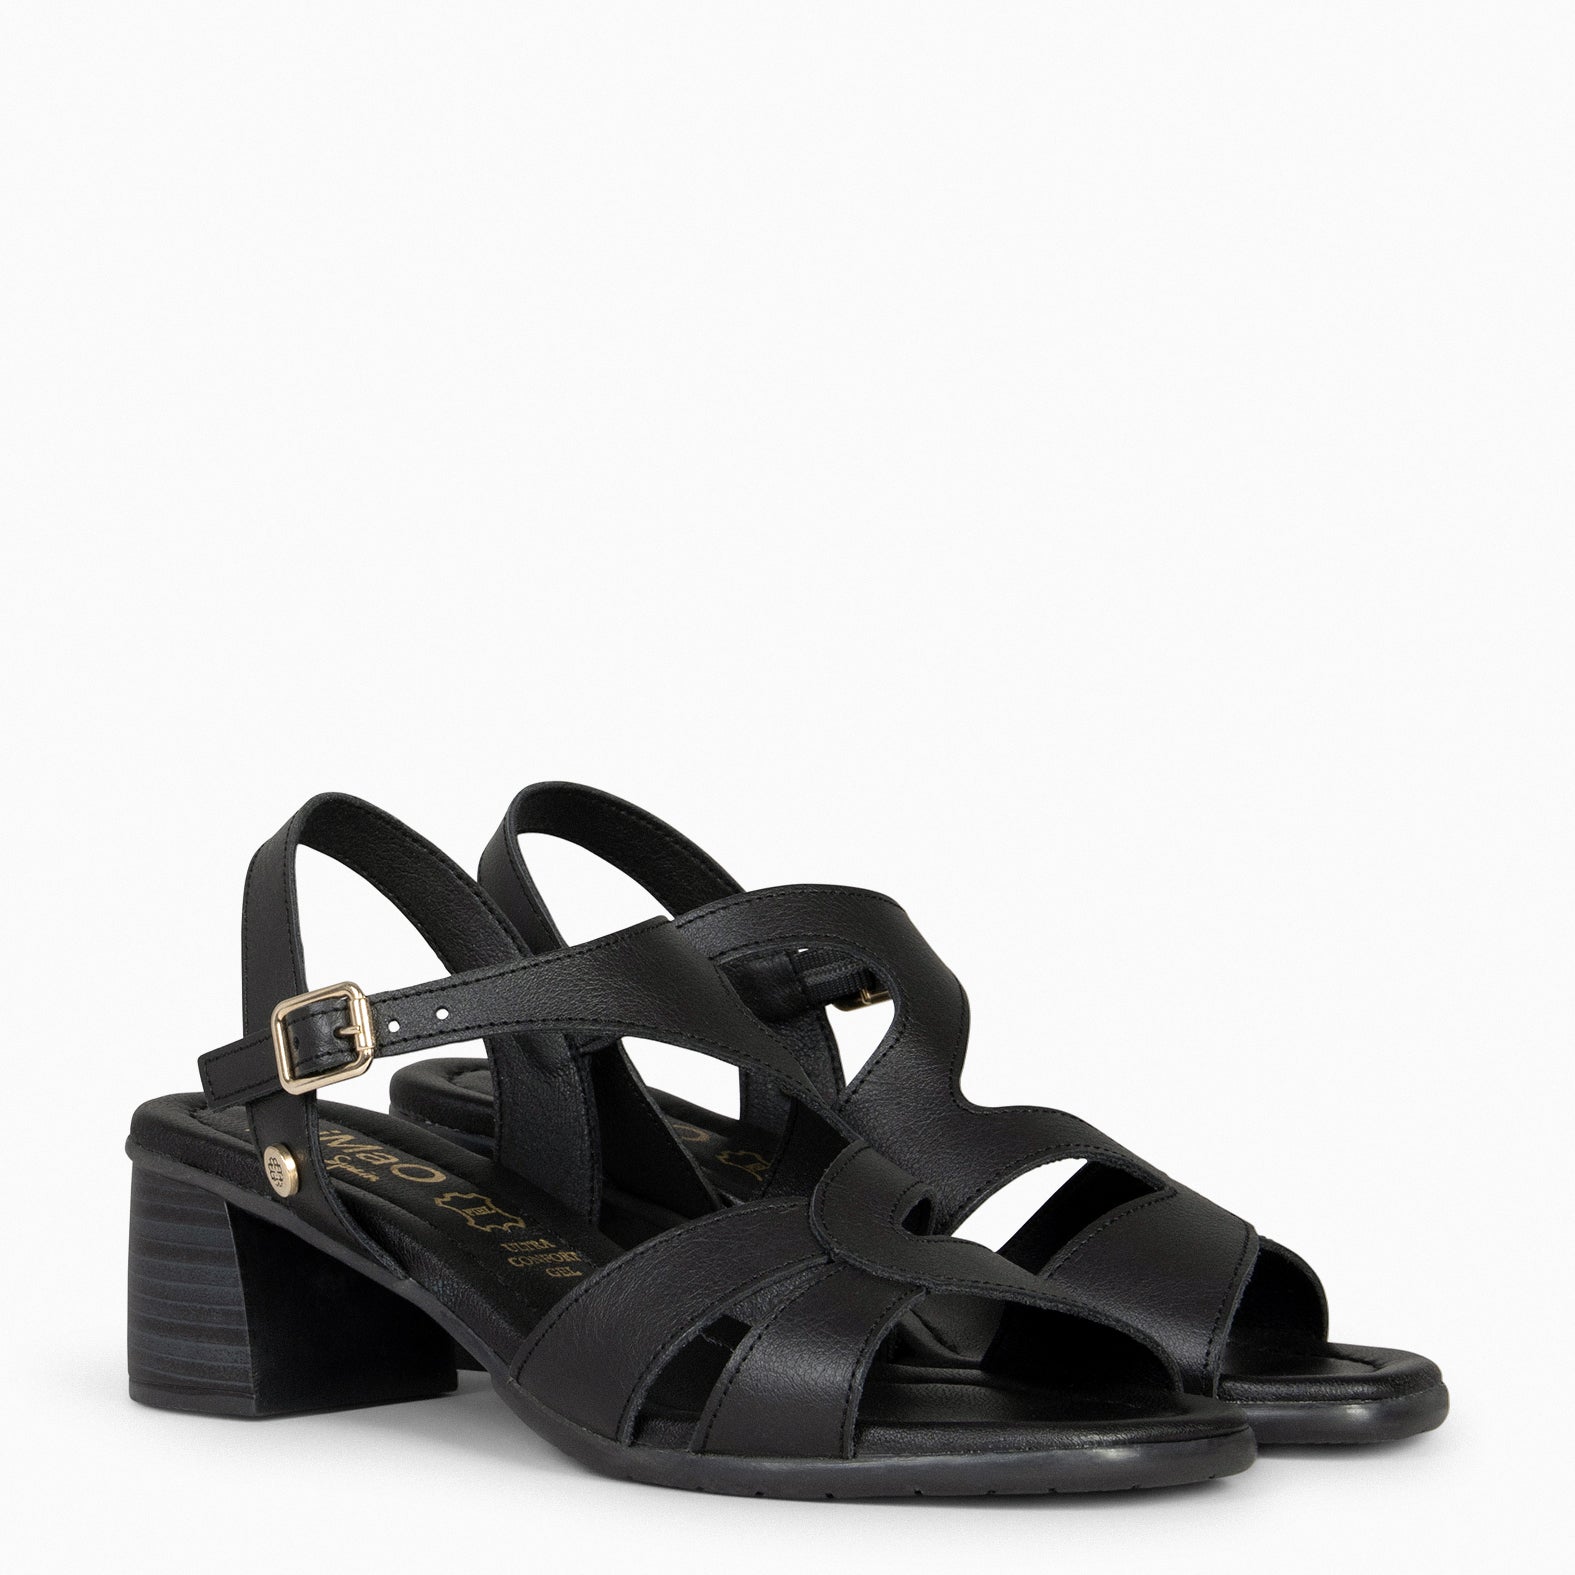 ESTRELLA – BLACK wide-heeled sandals